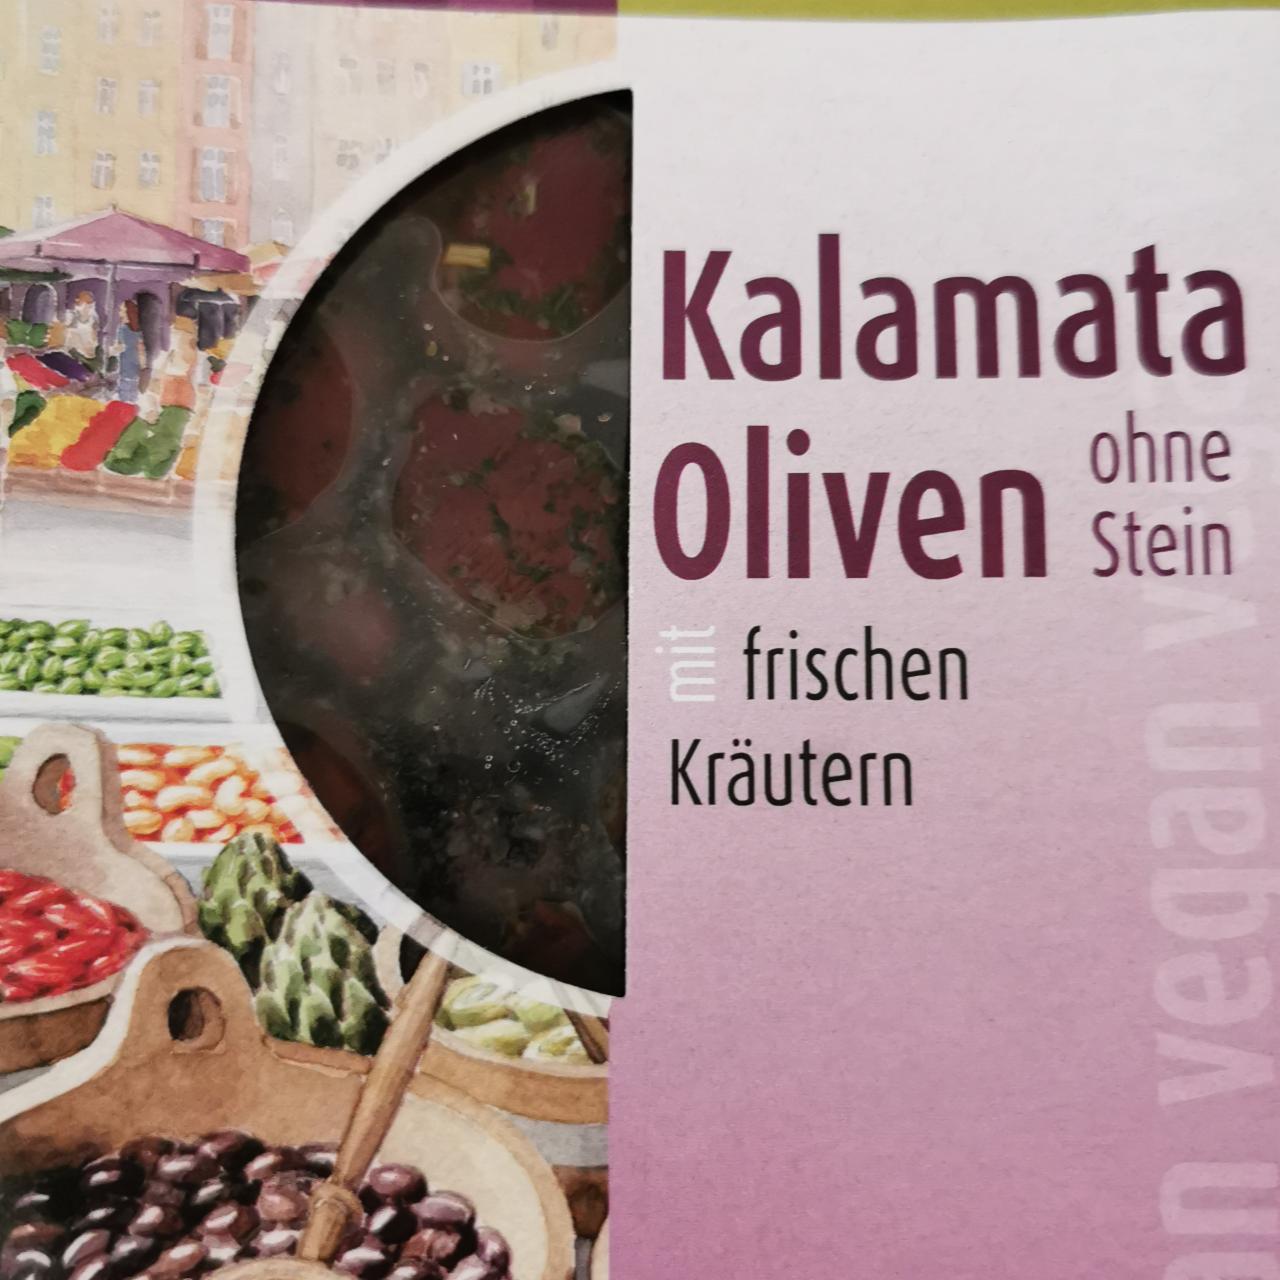 Fotografie - Bio-verde Kalamata oliven ohne Stein mit frischen Krautern